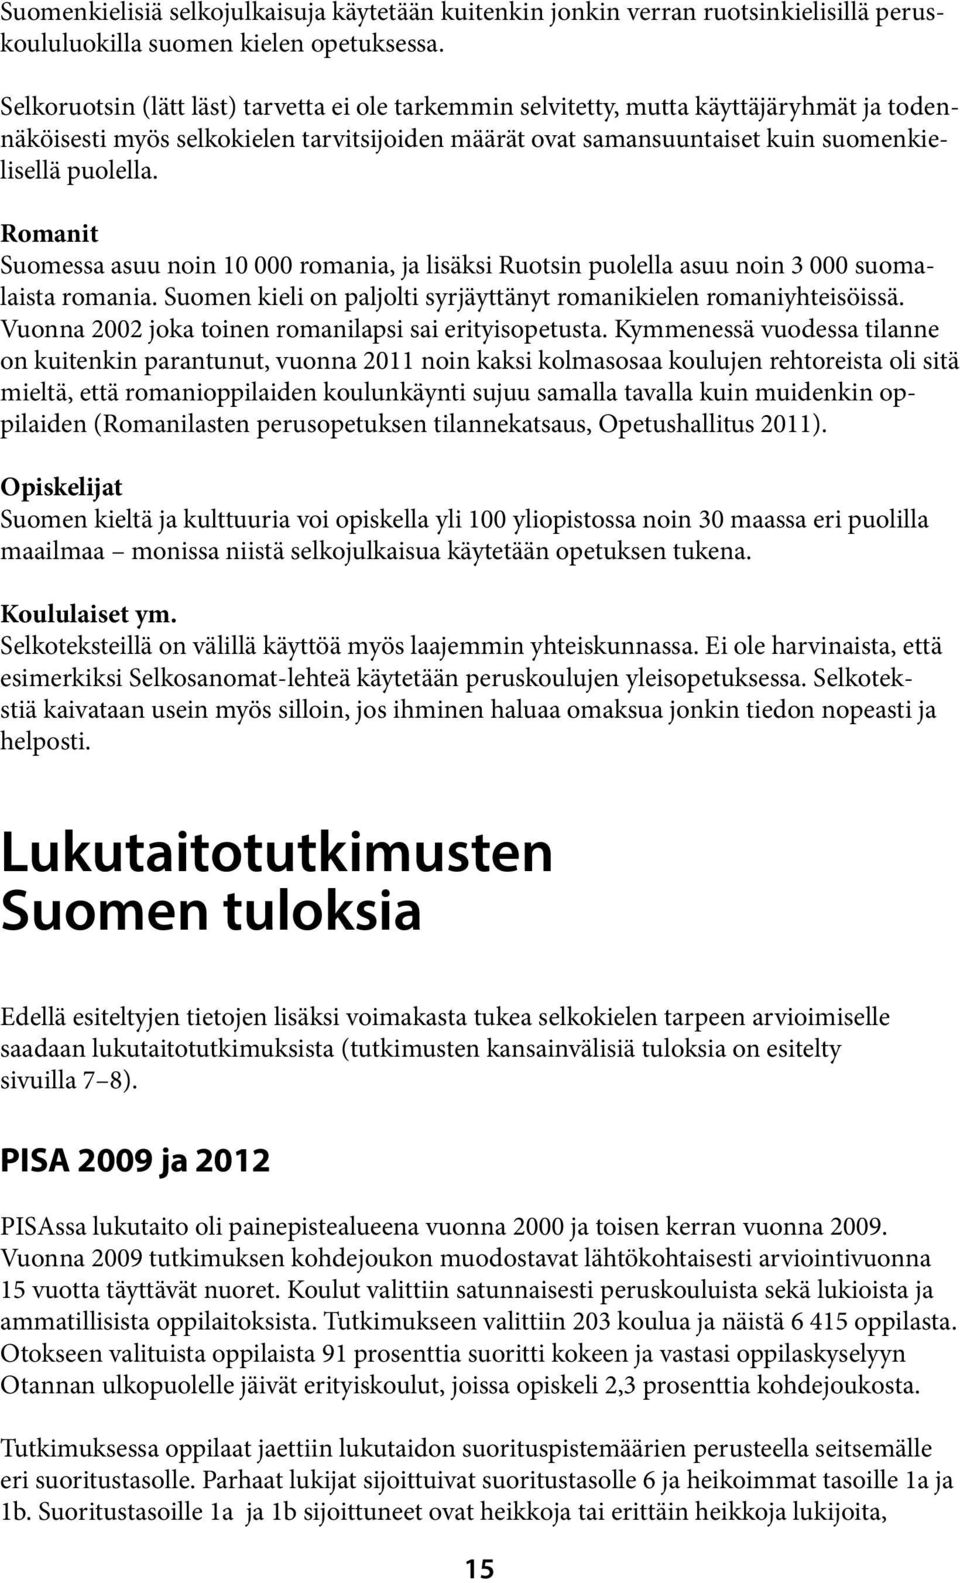 Romanit Suomessa asuu noin 10 000 romania, ja lisäksi Ruotsin puolella asuu noin 3 000 suomalaista romania. Suomen kieli on paljolti syrjäyttänyt romanikielen romaniyhteisöissä.